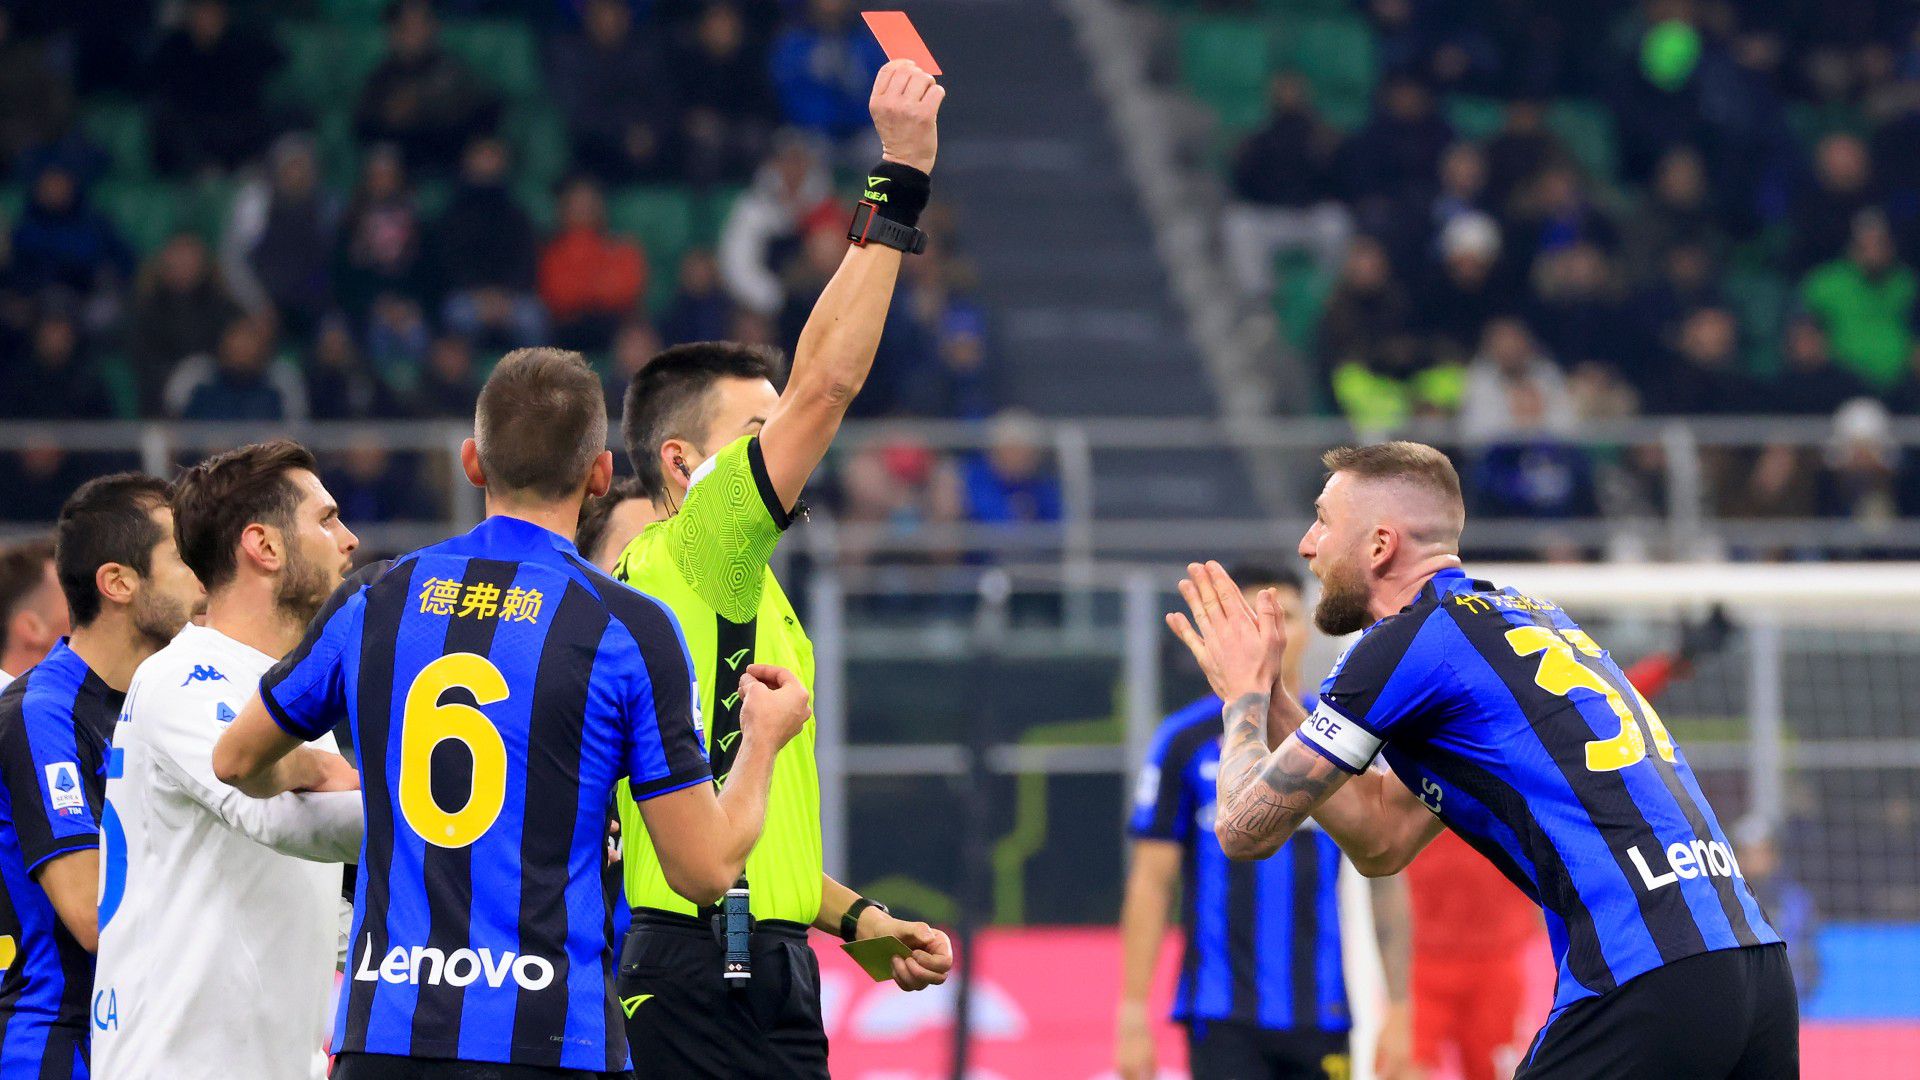 Milan Skriniar nem így akart főszereplő lenni: az Inter csapatkapitánya a 40. percben piros lapot kapott az Empoli elleni bajnokin.